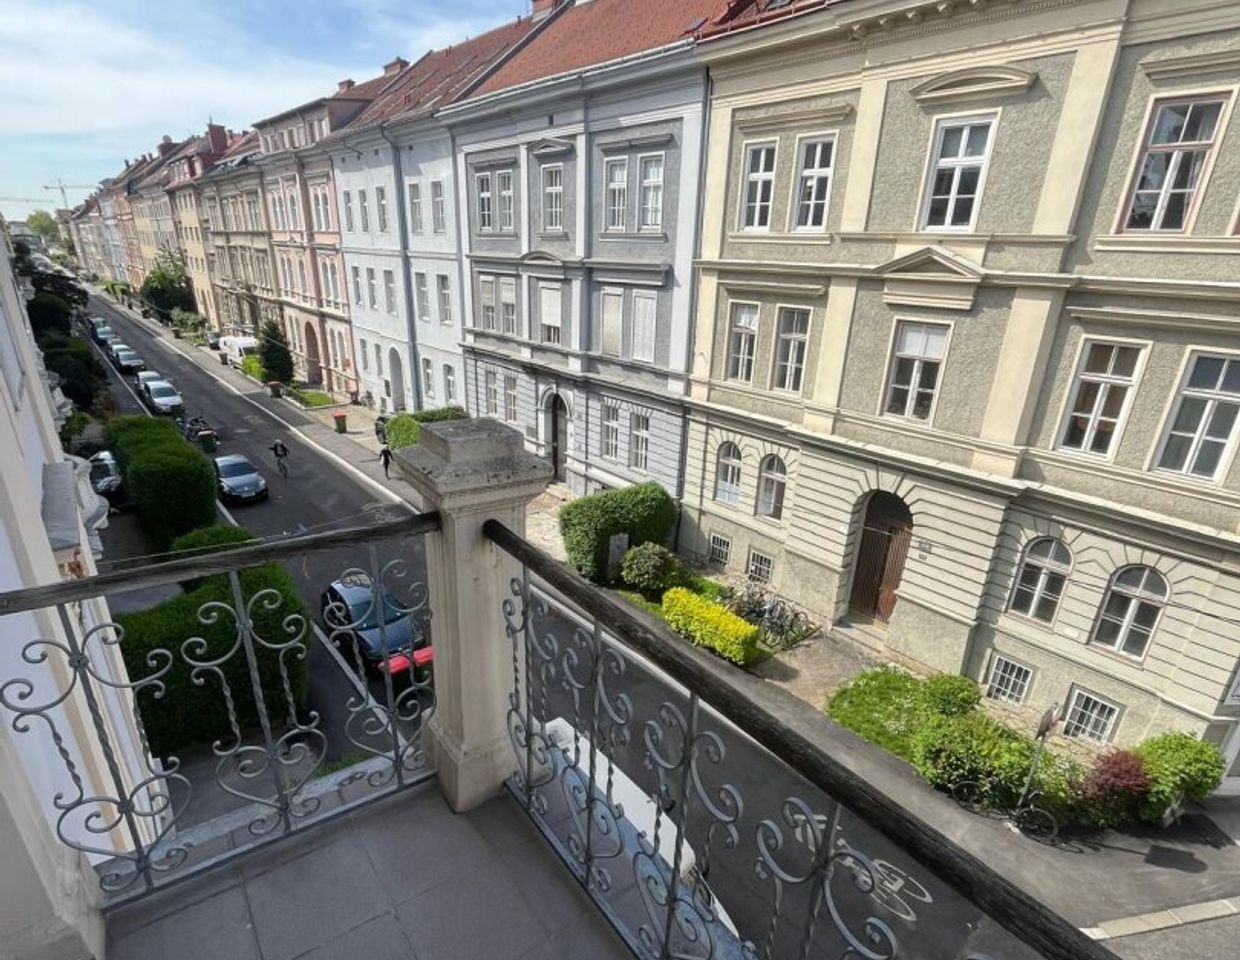 Außerordentlich musterhafte Mietwohnung im Zentrum von Graz, im Bezirk Jakomini, zu vermieten!